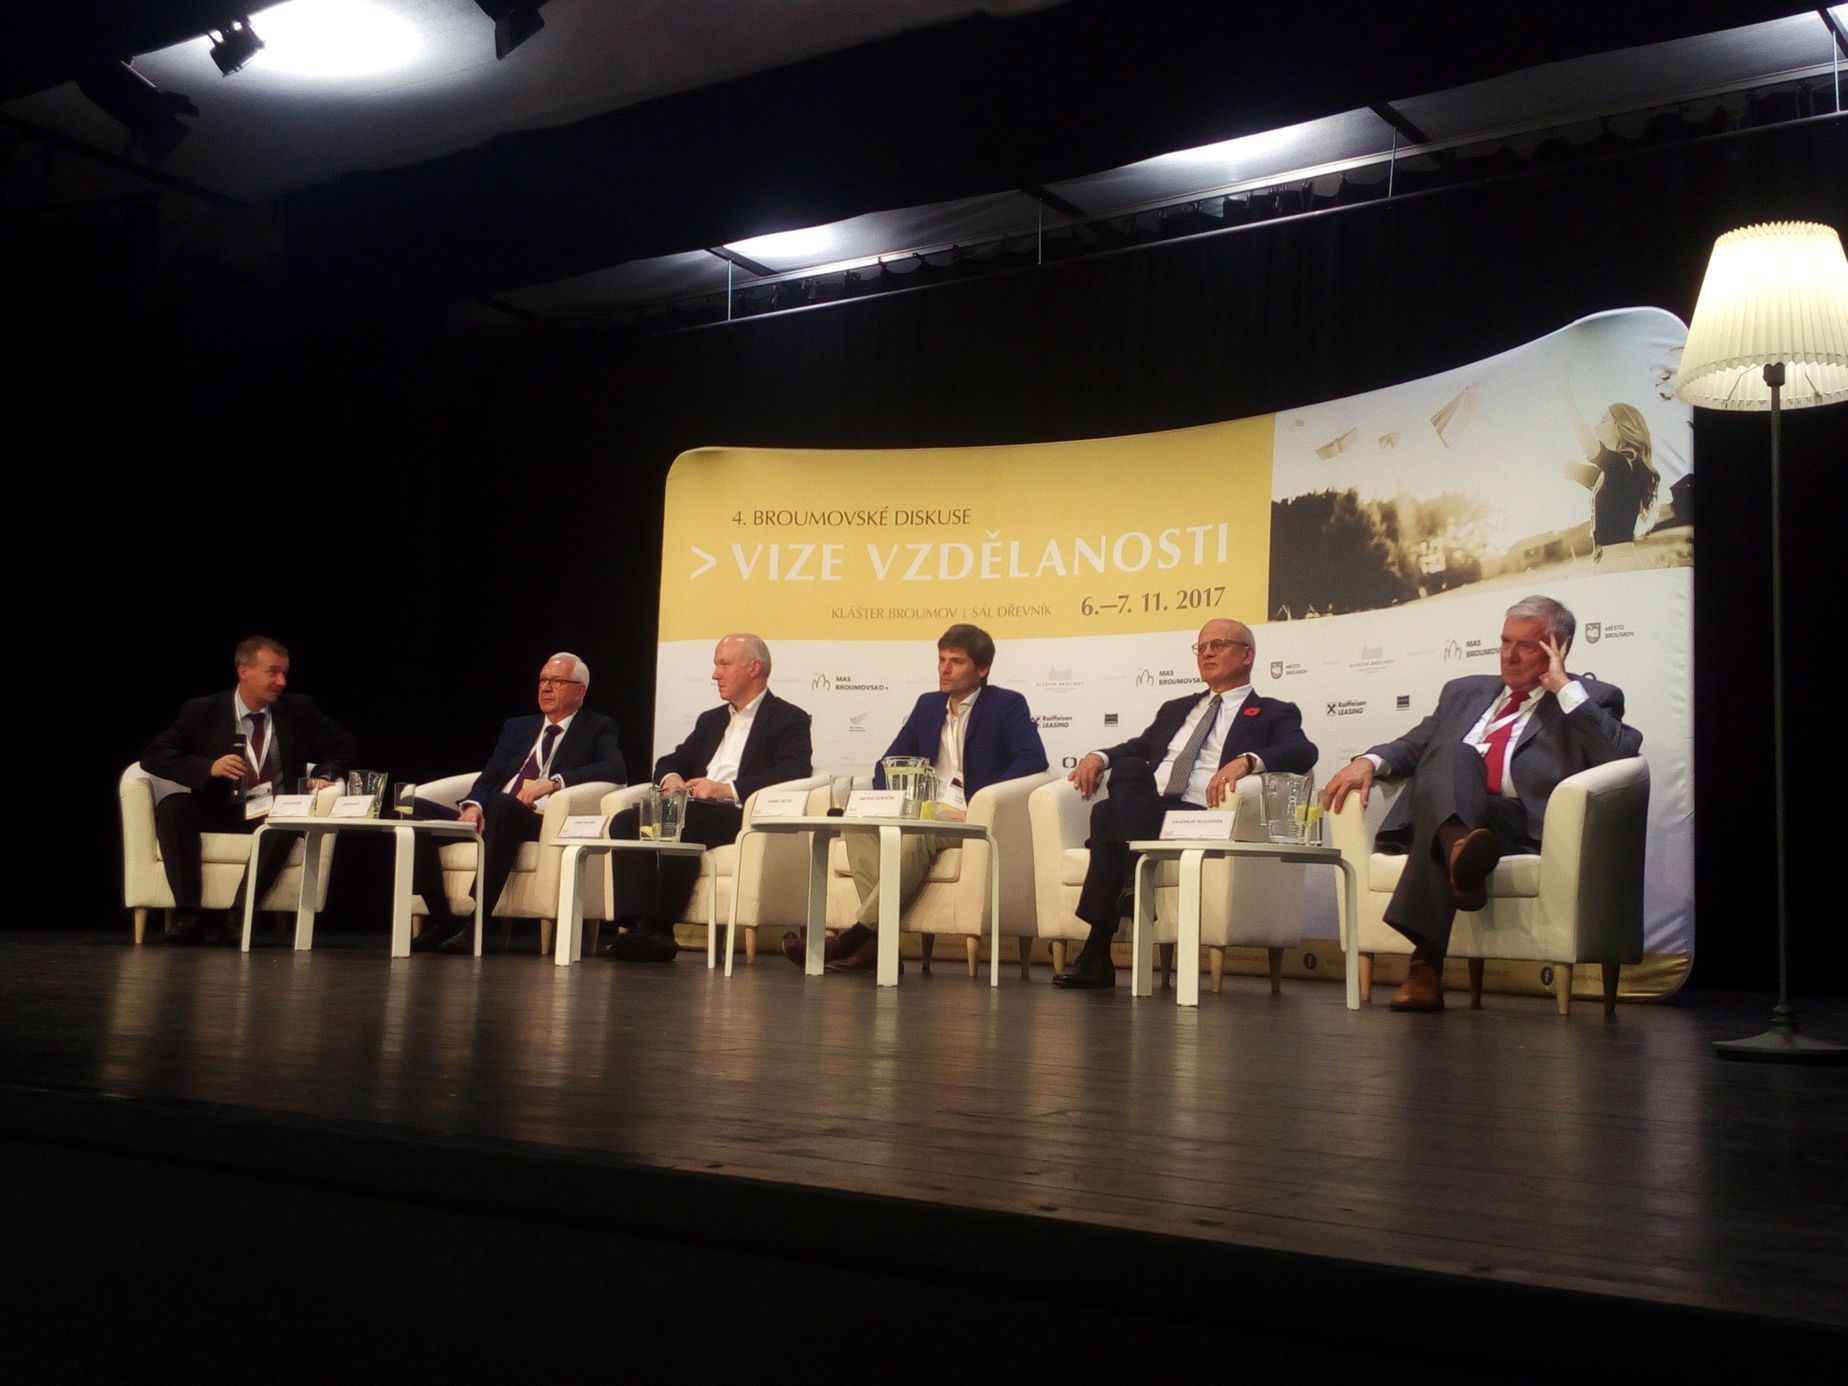 Debata pětice prezidentských kandidátů v Broumovském klášteře (Jiří Drahoš, Pavel Fischer, Marek Hilšer, Michal Horáček, Vratislav Kulhánek)